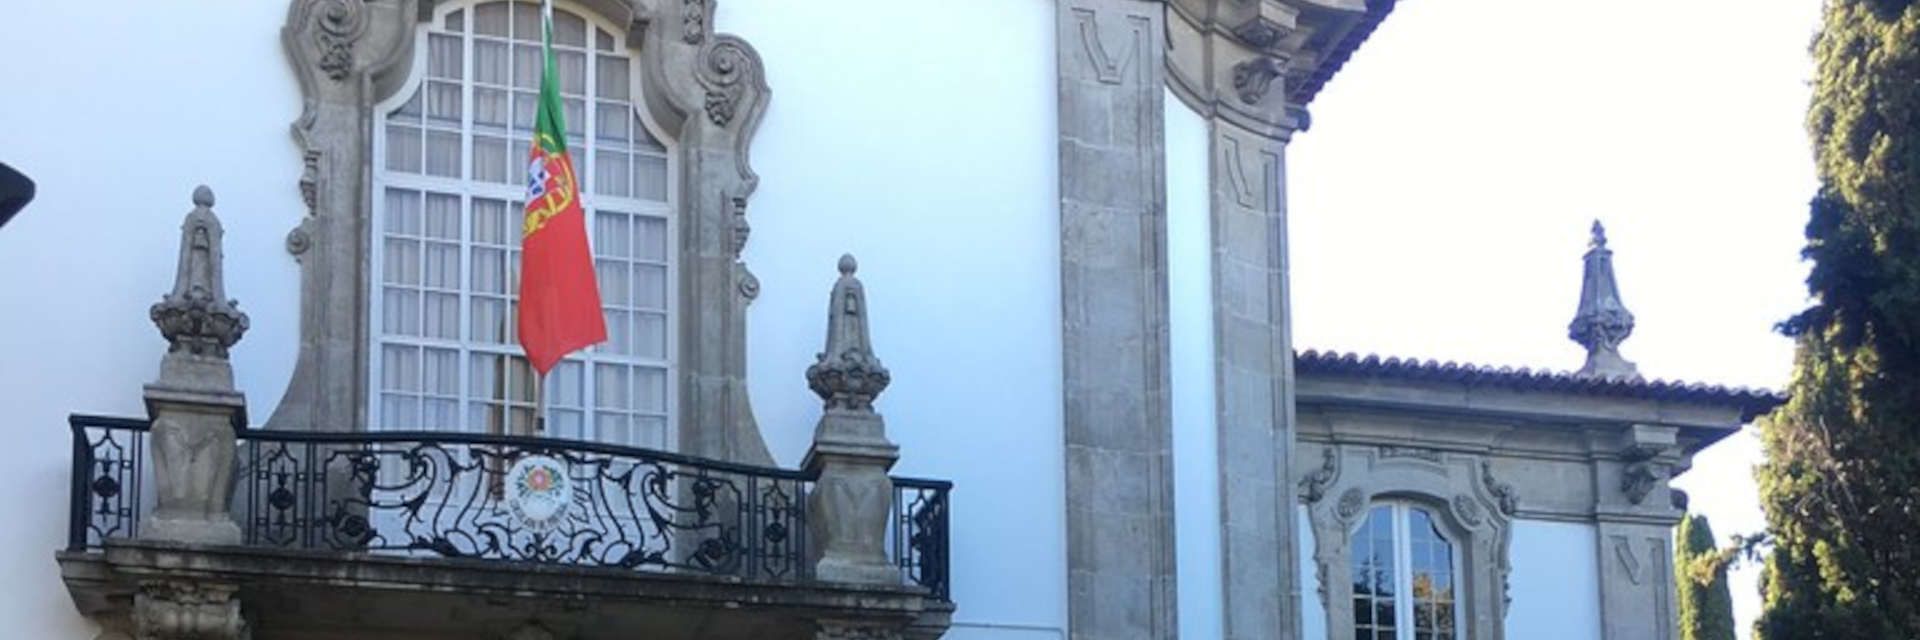 Consulado de Portugal em Sevilha